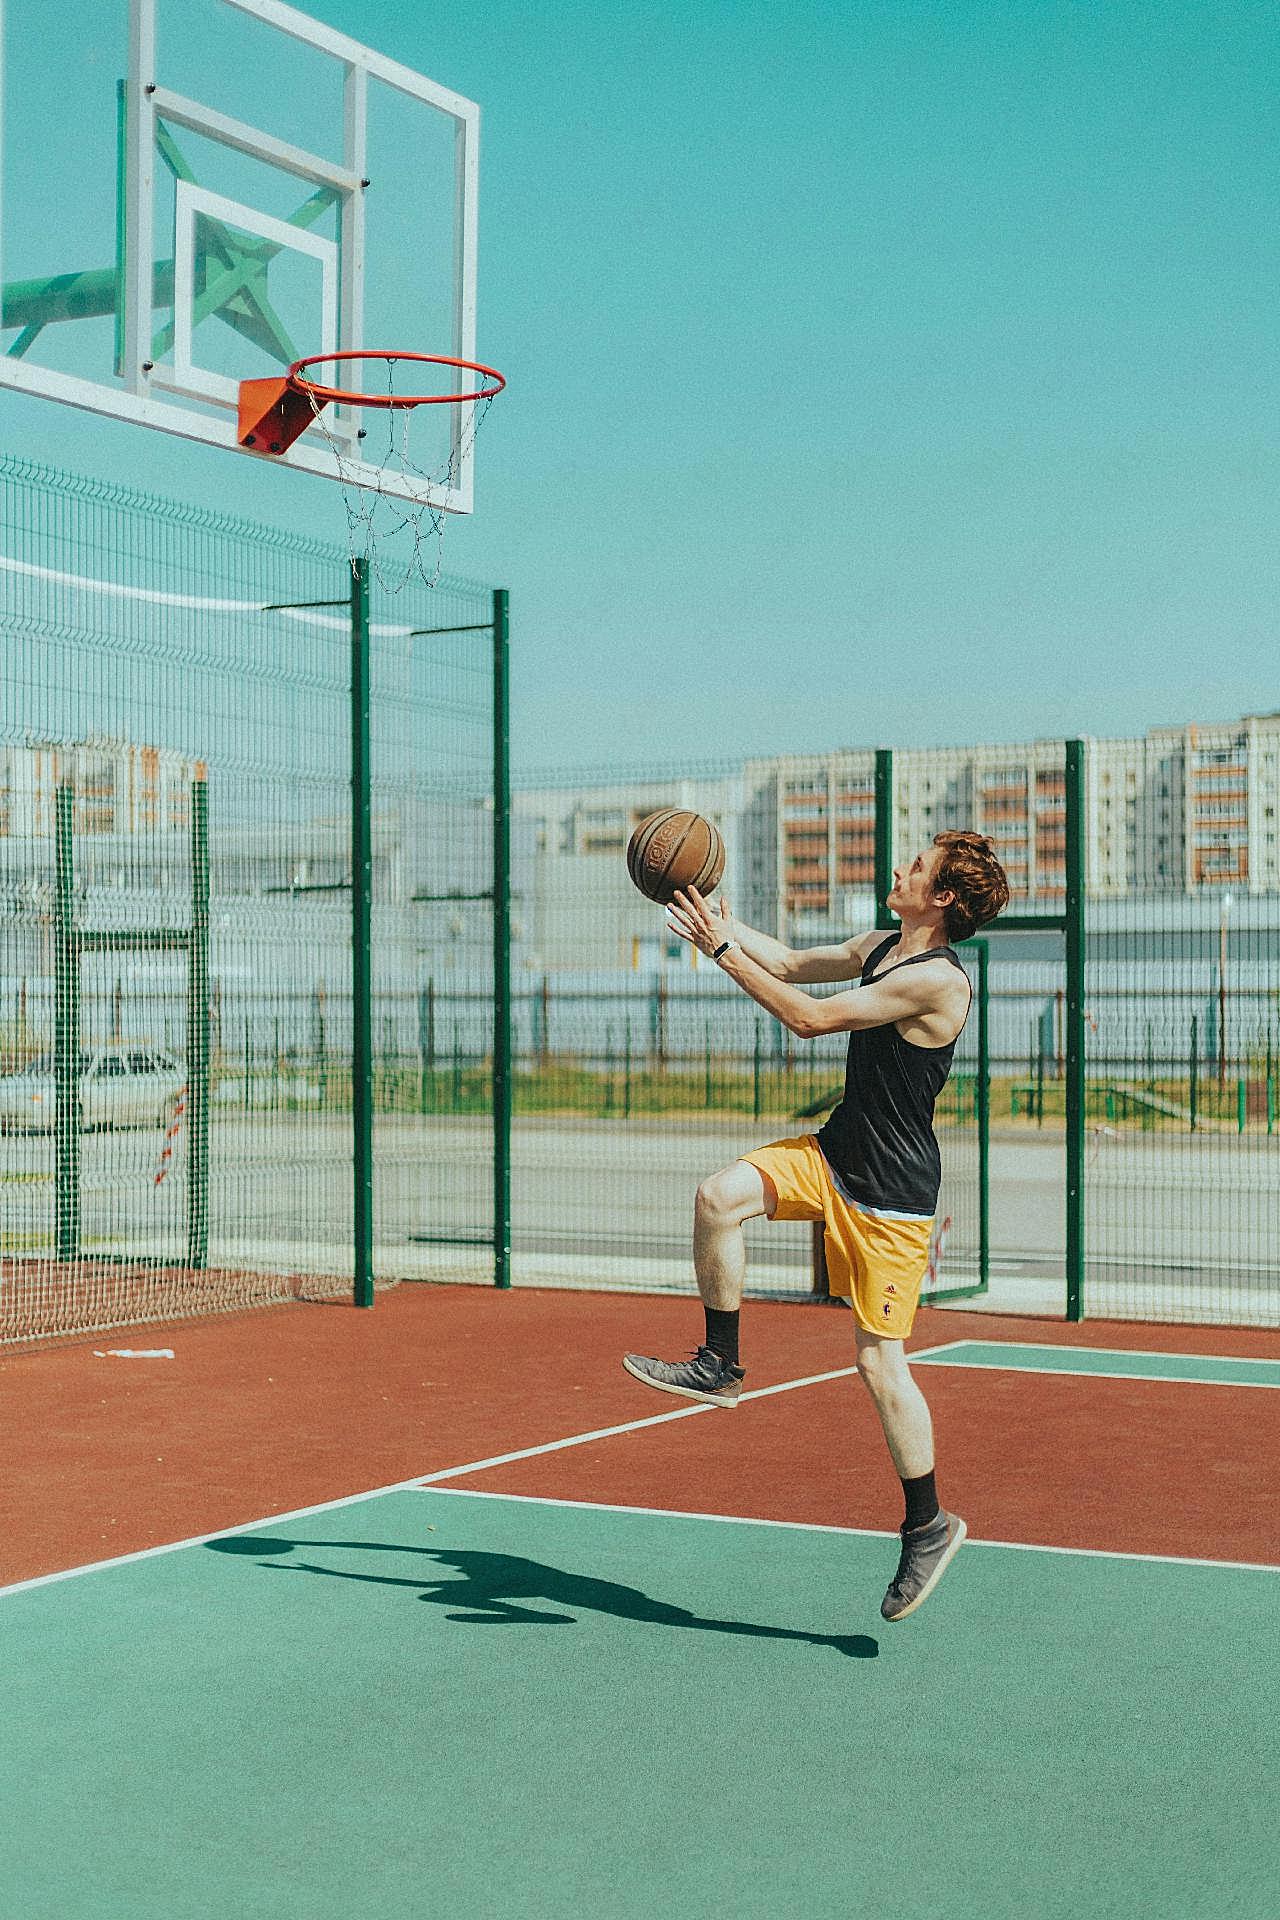 帅哥篮球场打篮球图片体育运动